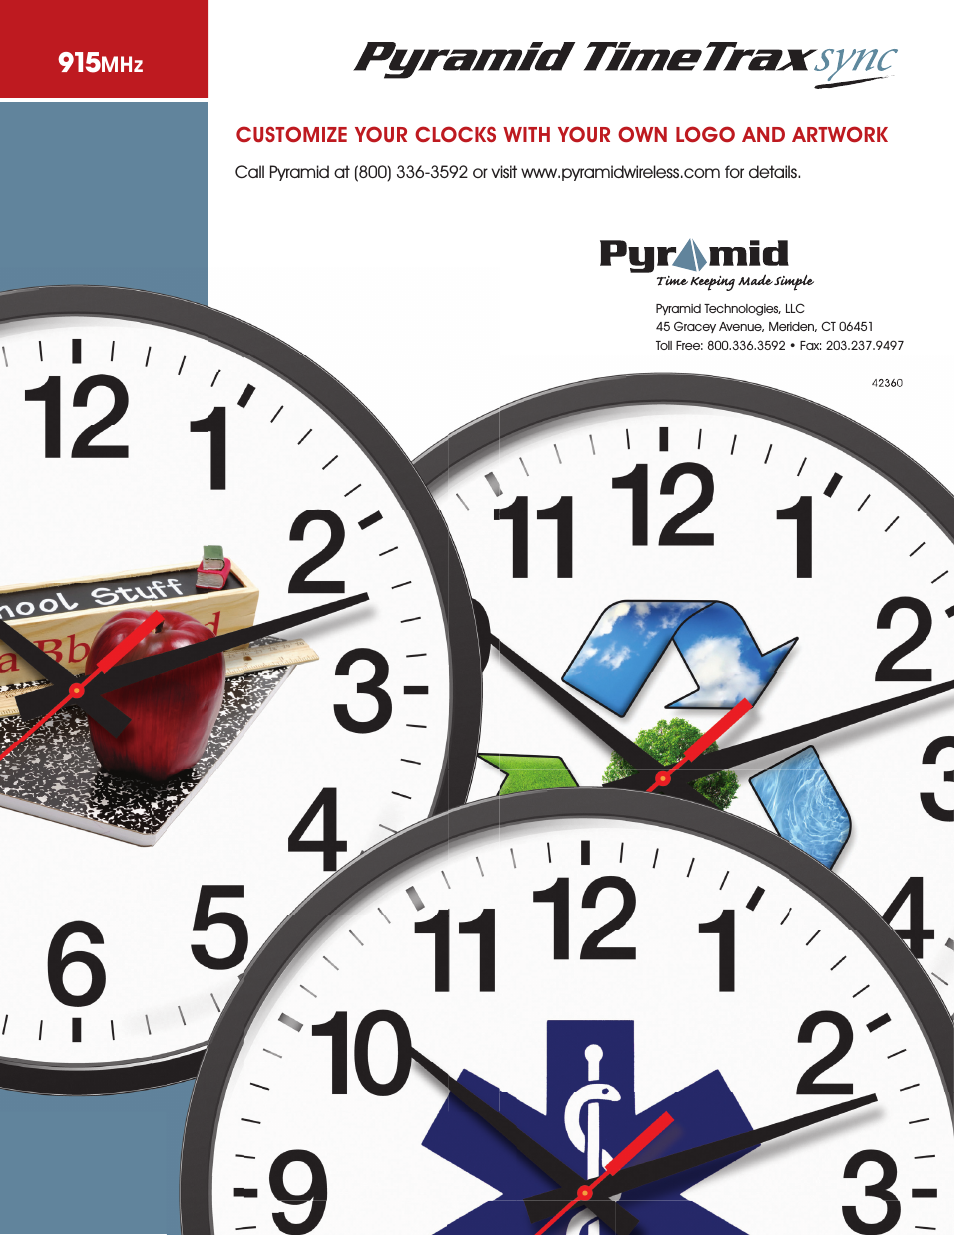 TimeTrax Clock